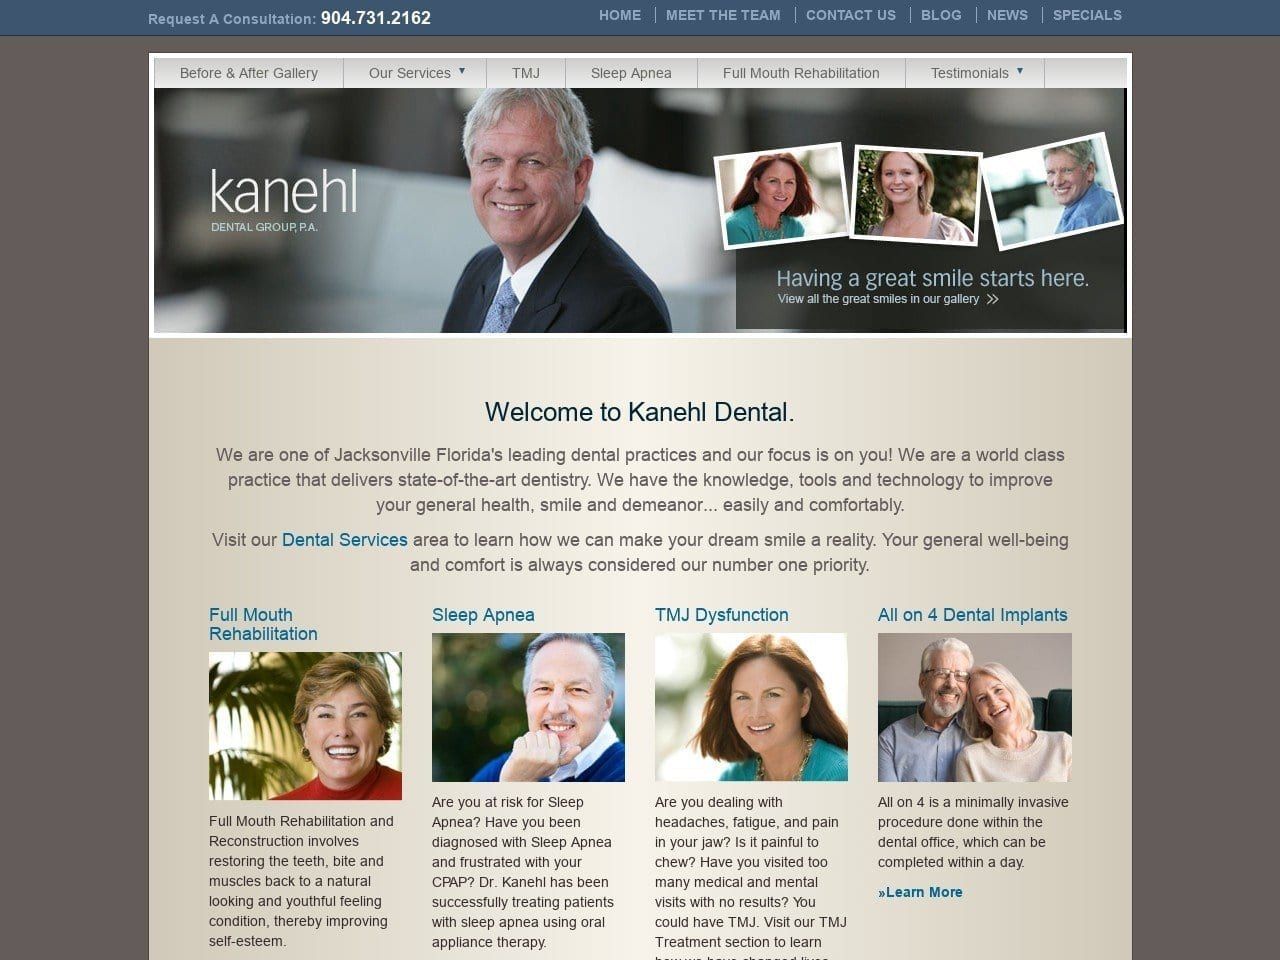 Kanehl Dental Group P.A. Website Screenshot from kanehldental.com